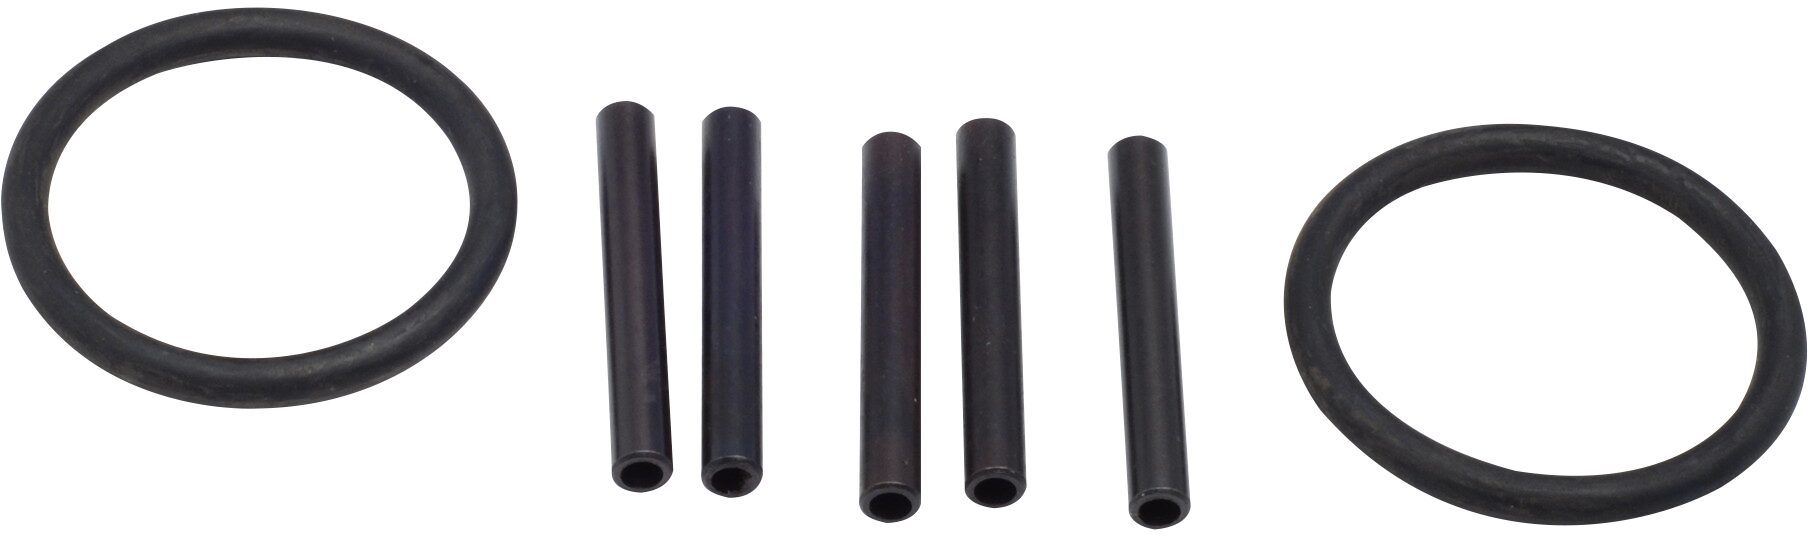 HAZET Ersatzteil Satz für Federspanner: 5 Zylinderstifte und 2 O-Ringe 4900-02/7 · 6 mm